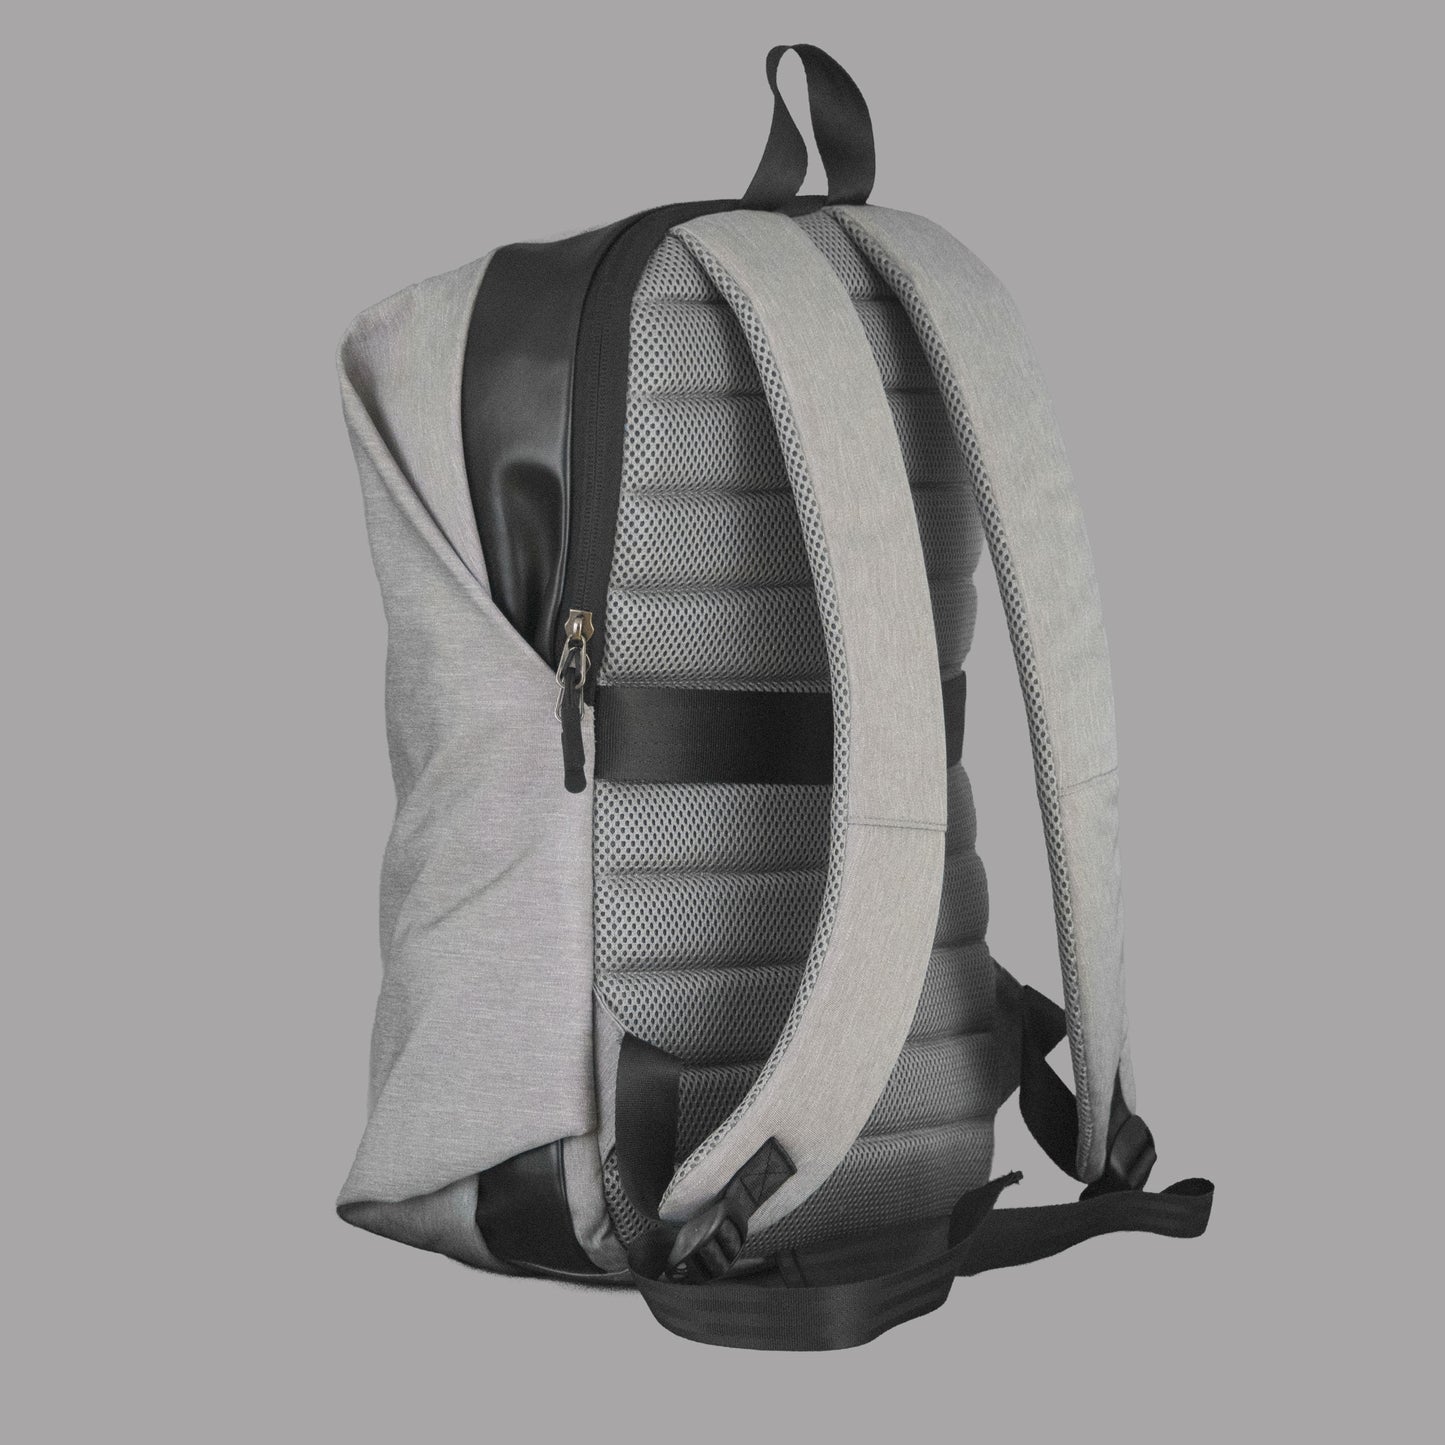 Backpack for female